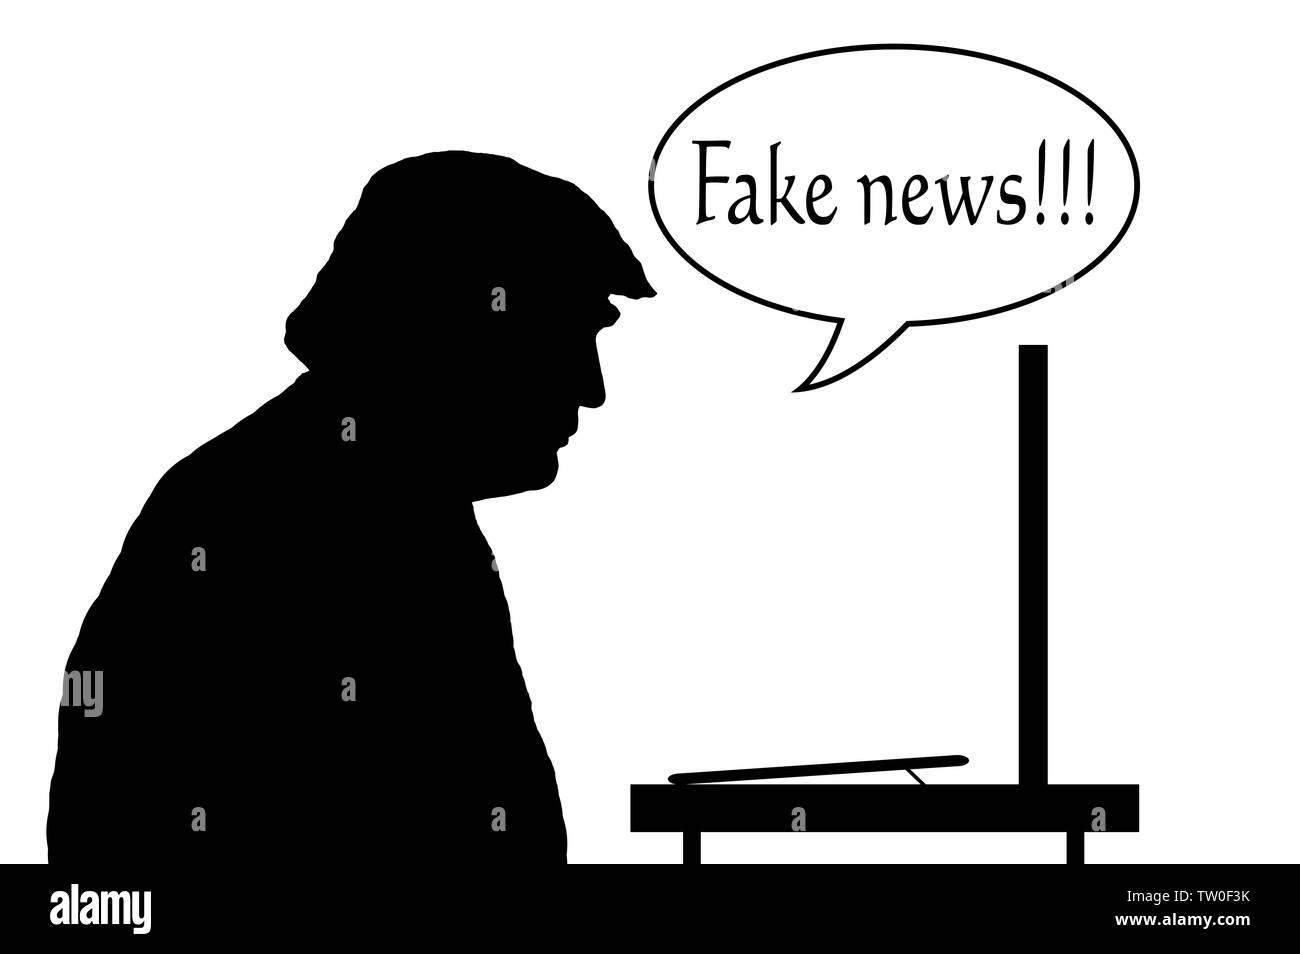 Illustrazione che mostra una silhouette del Presidente USA Trump sedersi per leggere le notizie sul monitor di un computer con un discorso bolla dicendo "Fake news'. Foto Stock